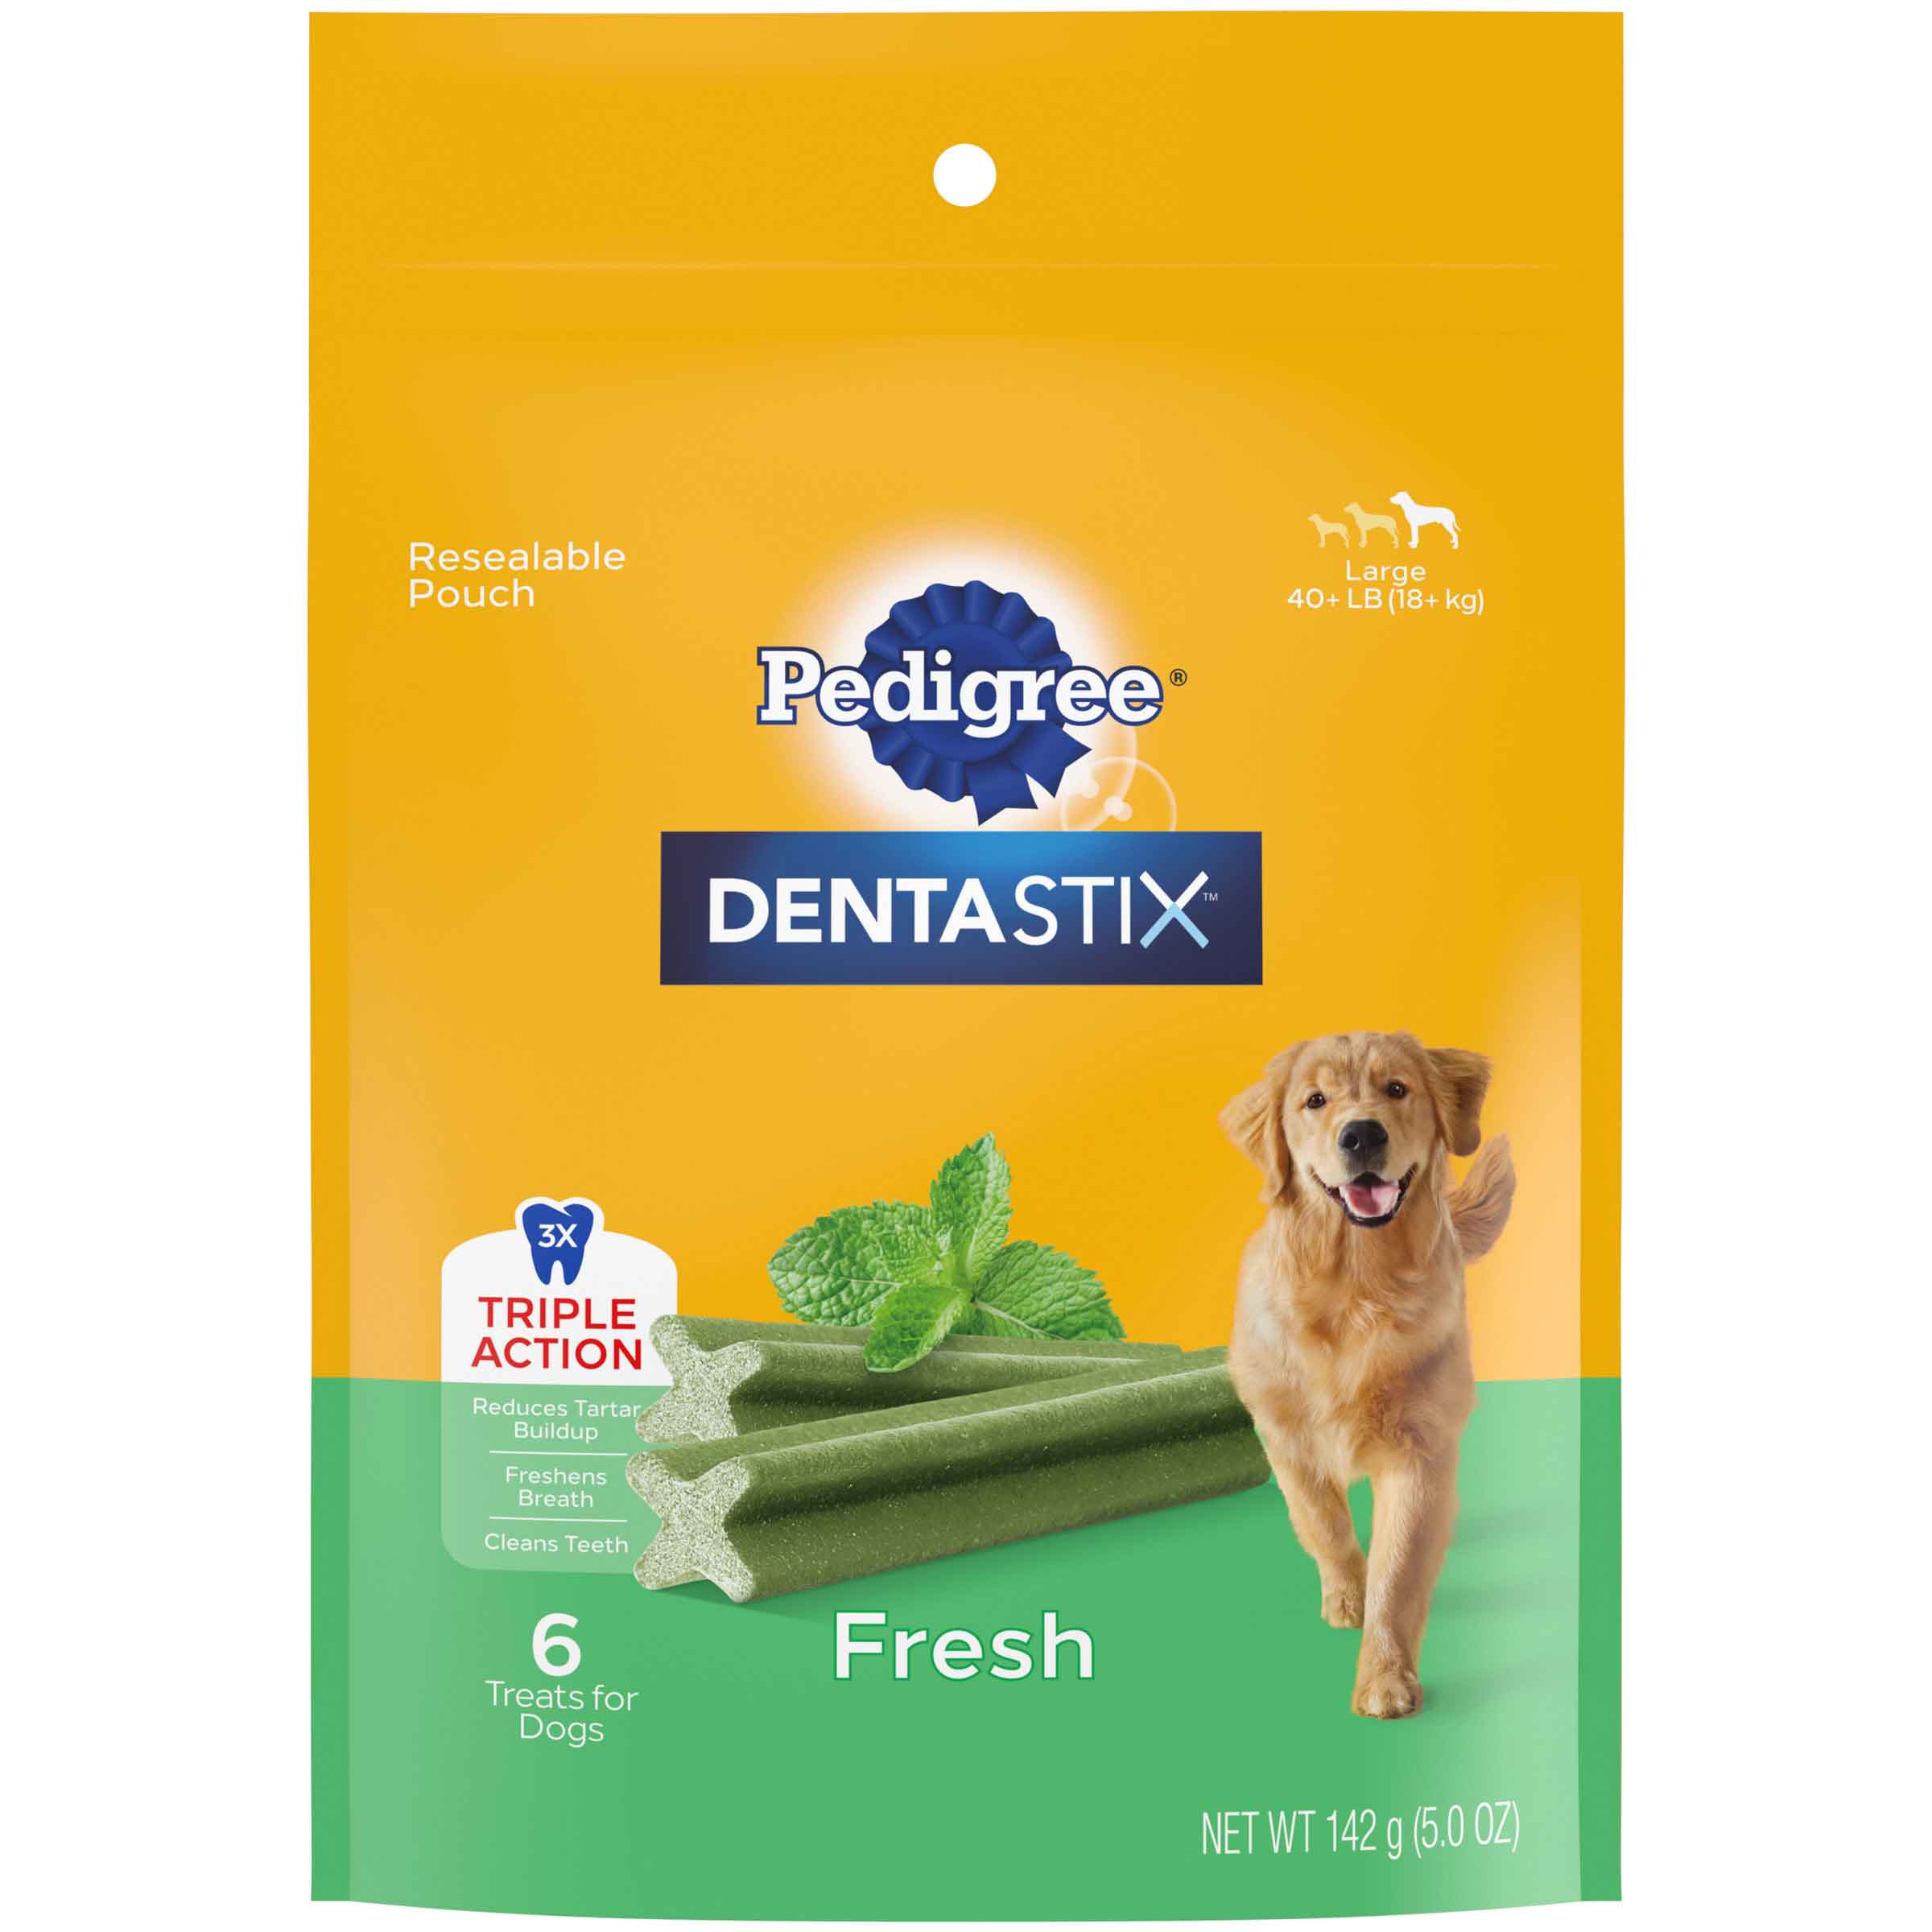 Pedigree Dentastix Dental Dog Treats for Large Dogs Fresh Flavor Dental Bones, 5.19 Ounces Pack (6 Treats)